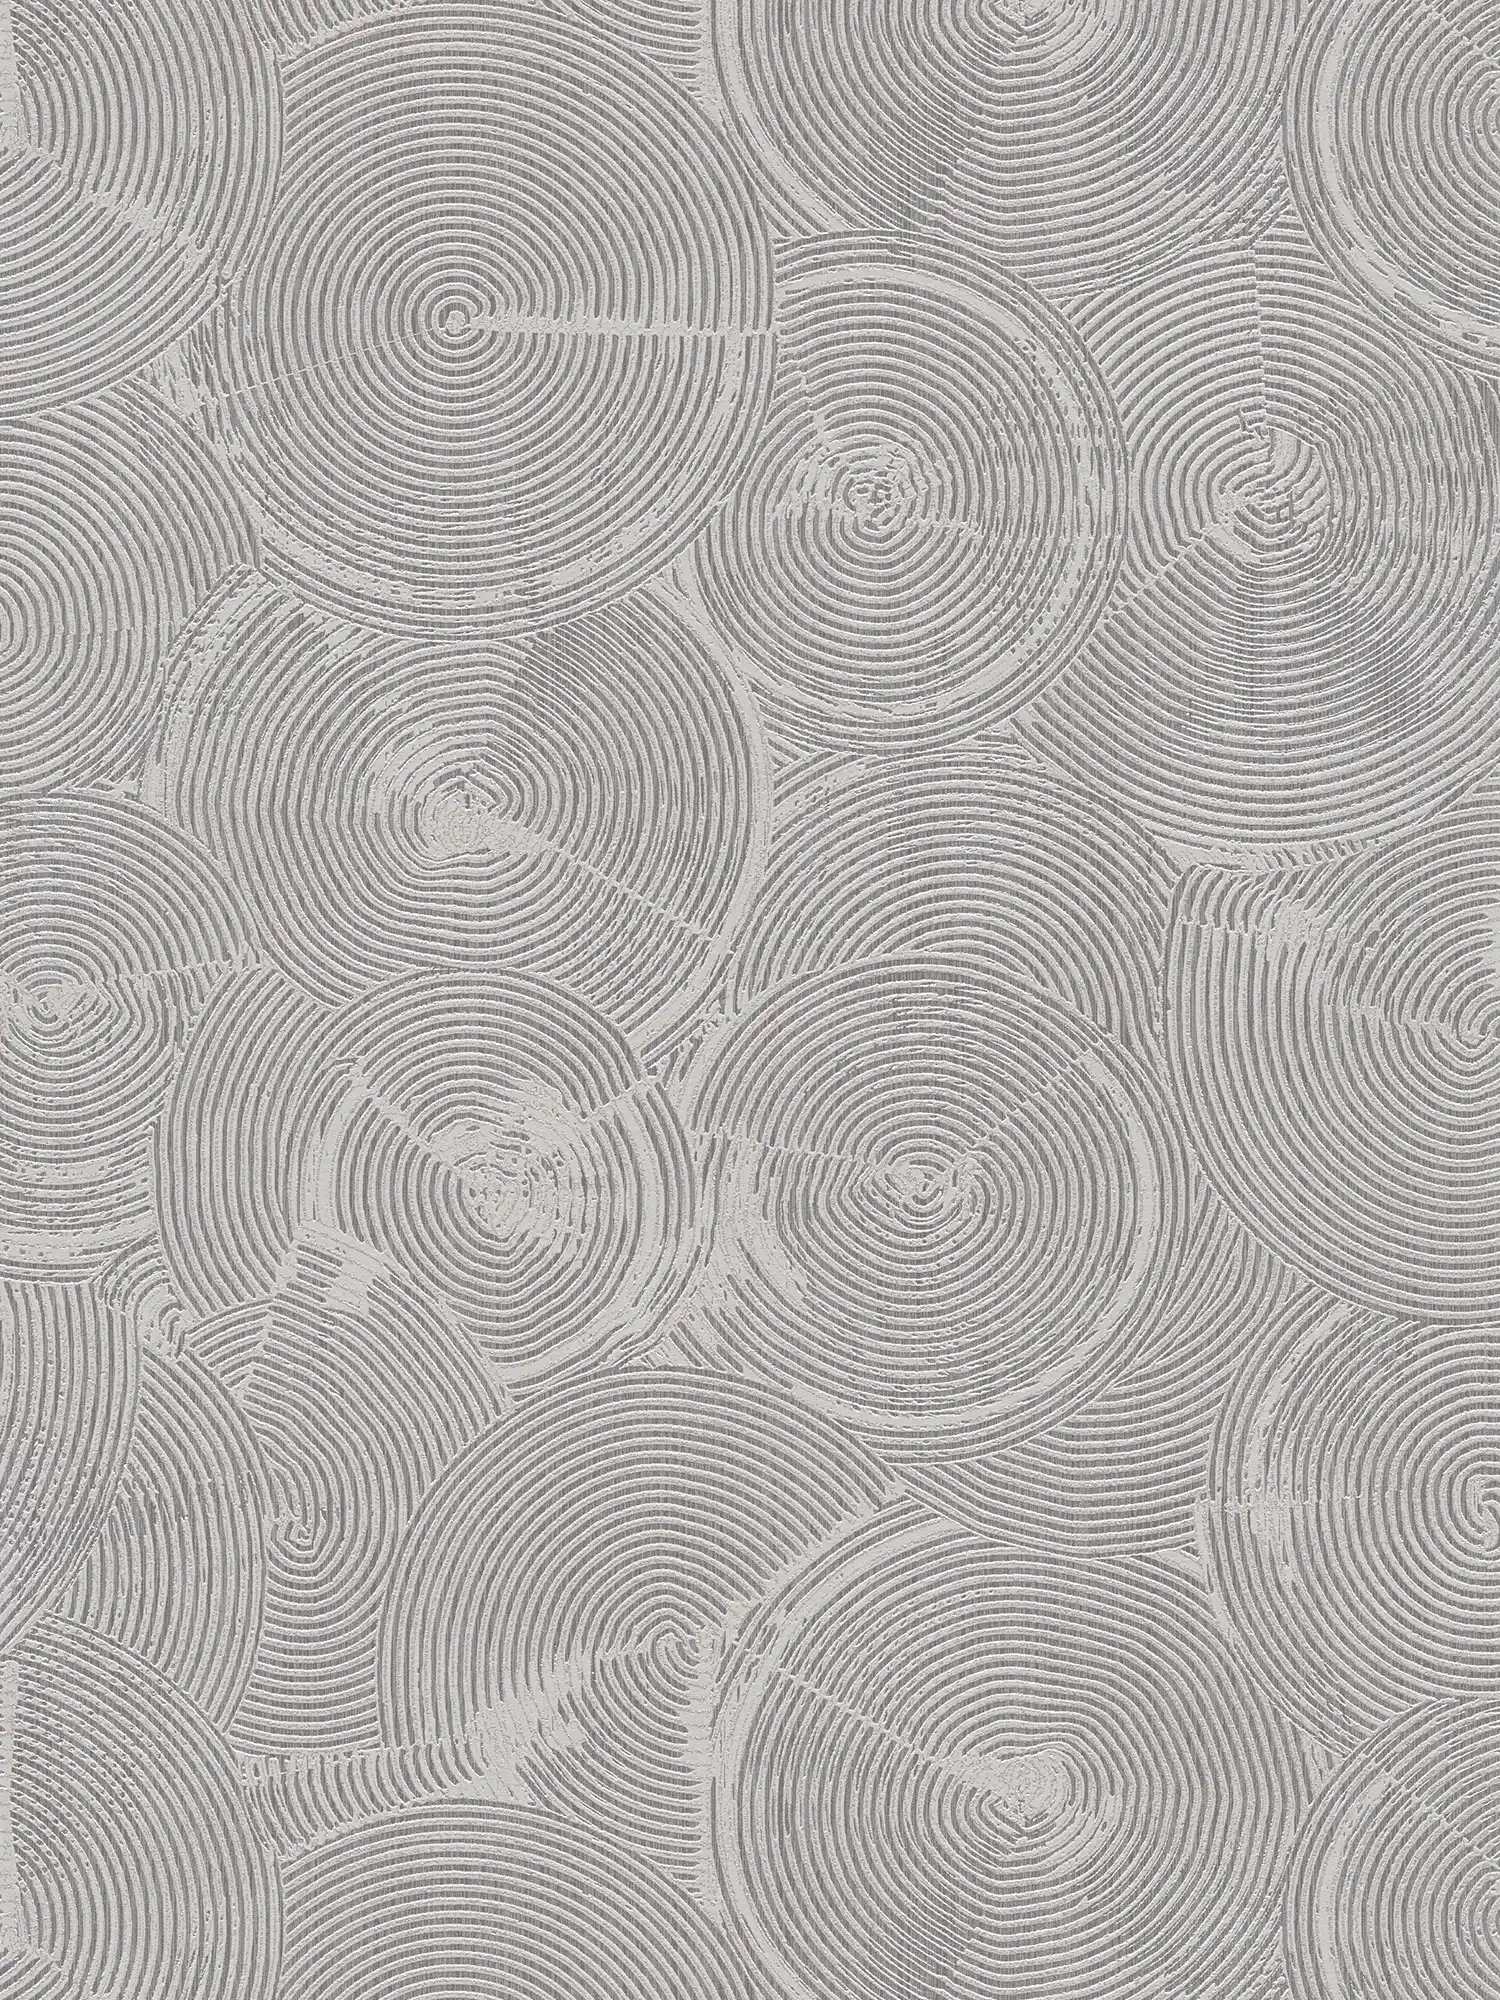 papier peint imitation plâtre avec effet métallisé argenté - gris, métallisé, blanc
